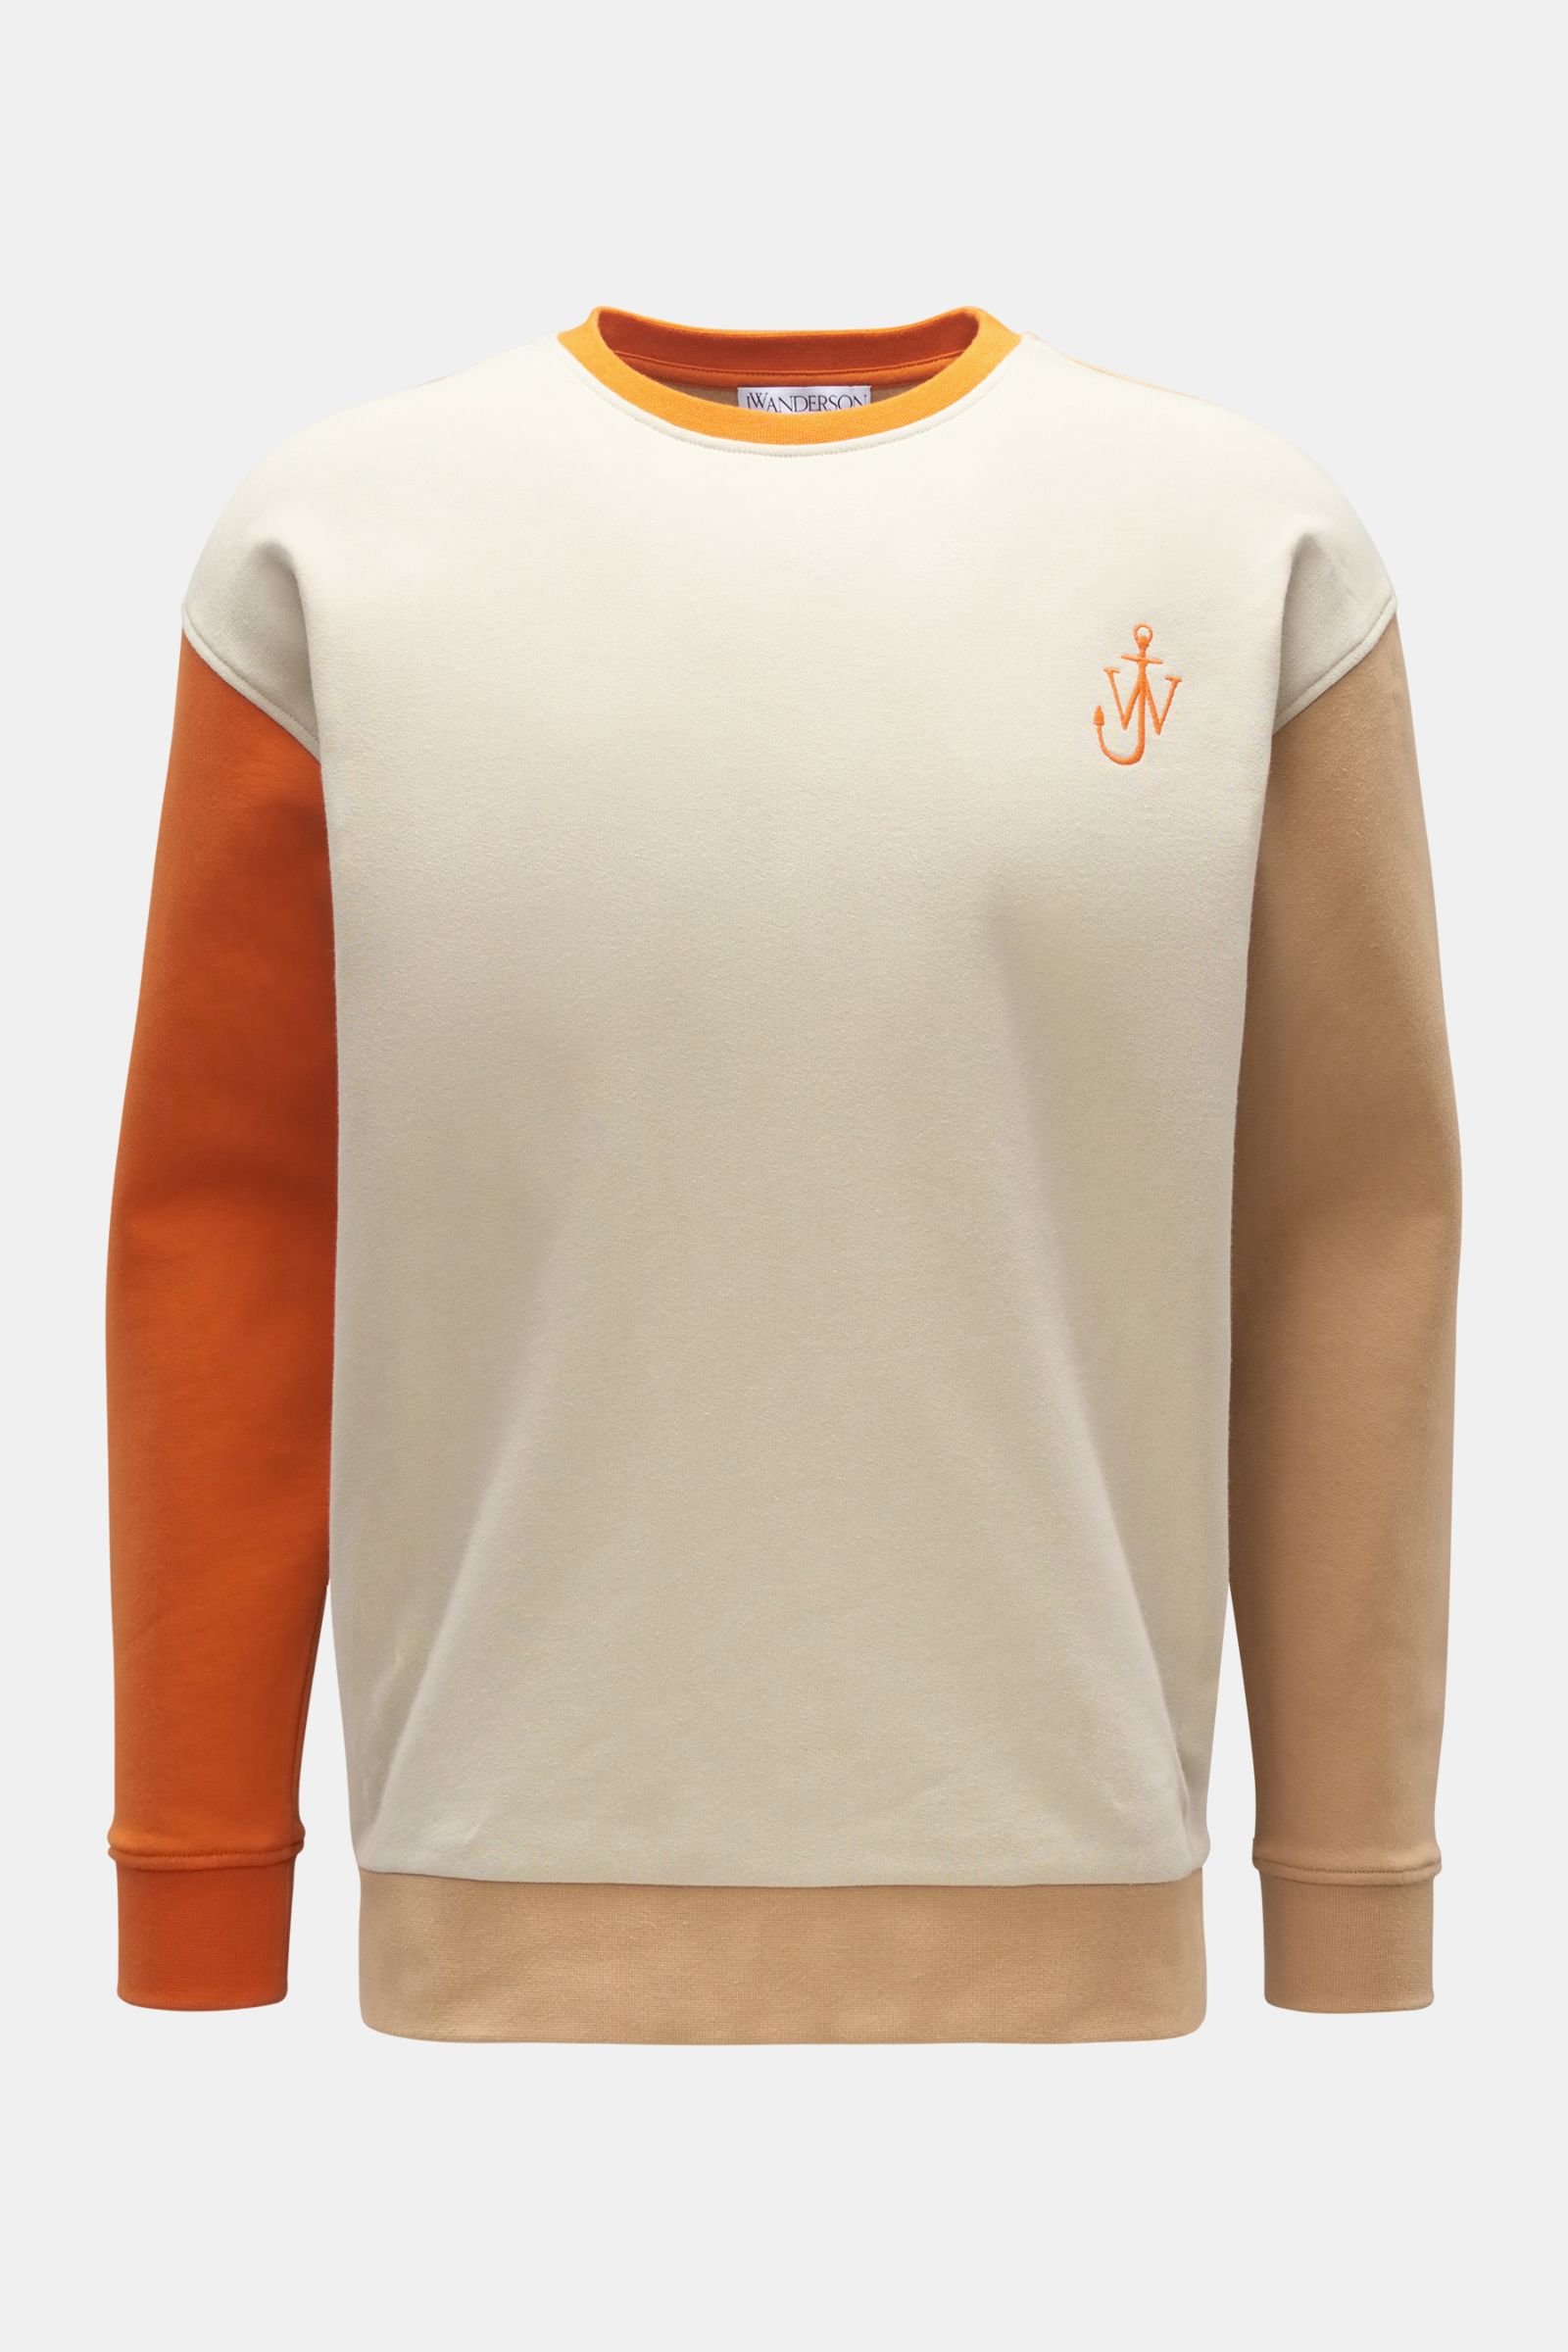 Rundhals-Sweatshirt beige/orange/hellbraun